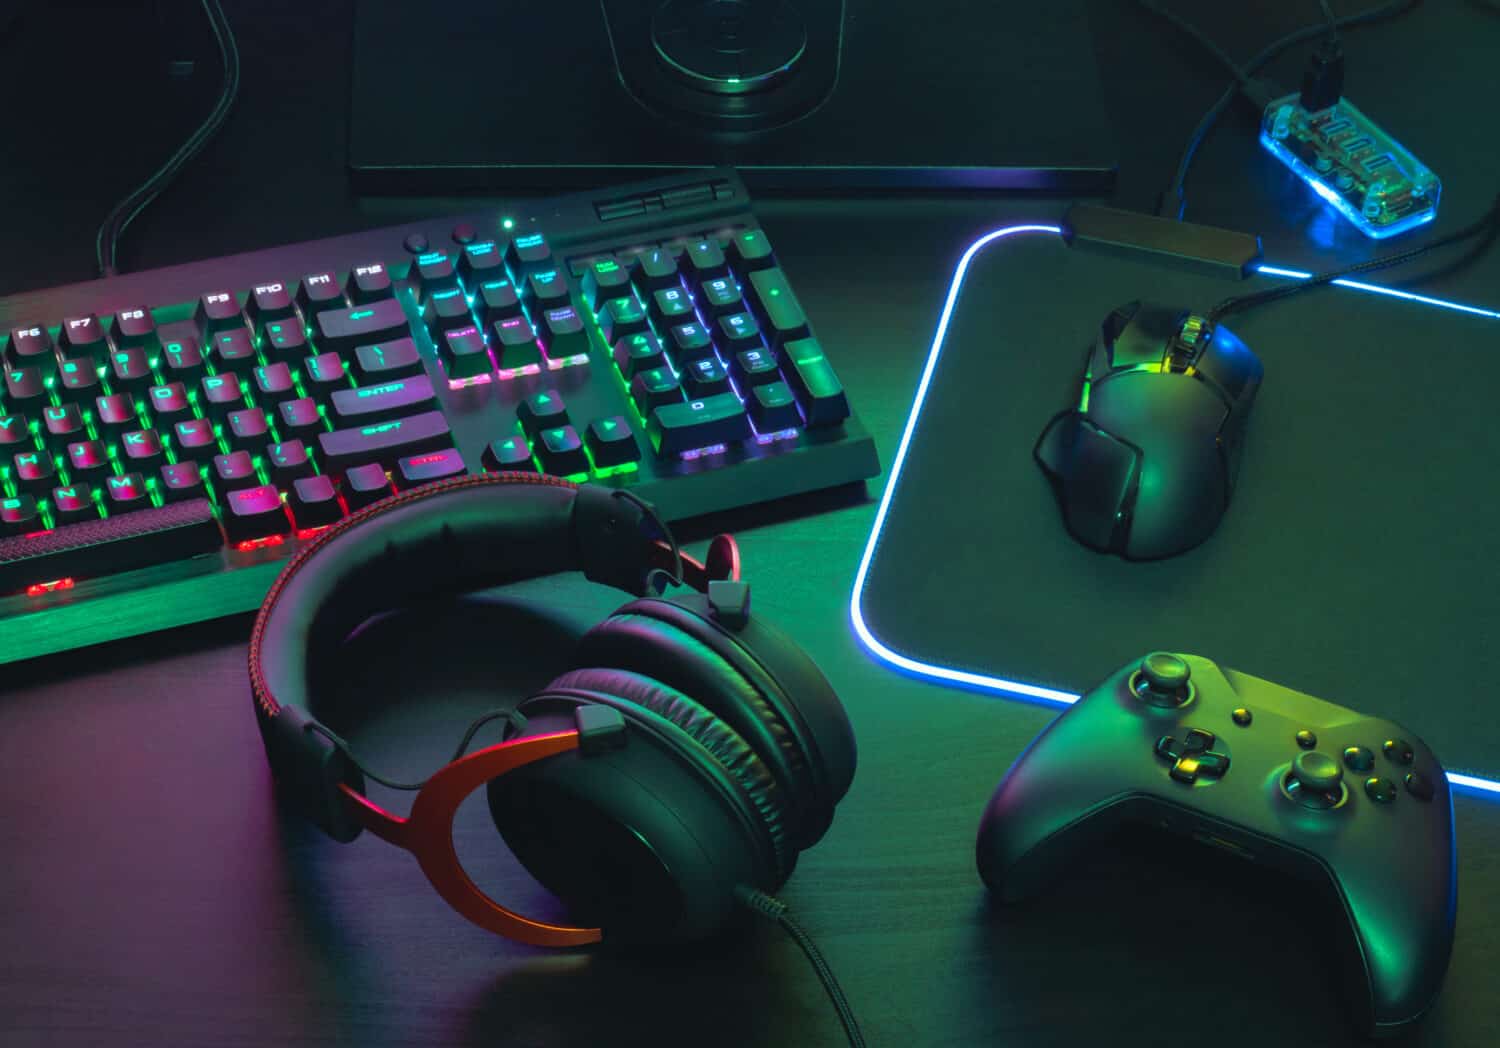 Khái niệm không gian làm việc của game thủ, xem hàng đầu một thiết bị chơi game, chuột, bàn phím, cần điều khiển, tai nghe, cần điều khiển di động, trong tai nghe tai và miếng đệm chuột với màu RGB trên nền bàn màu đen